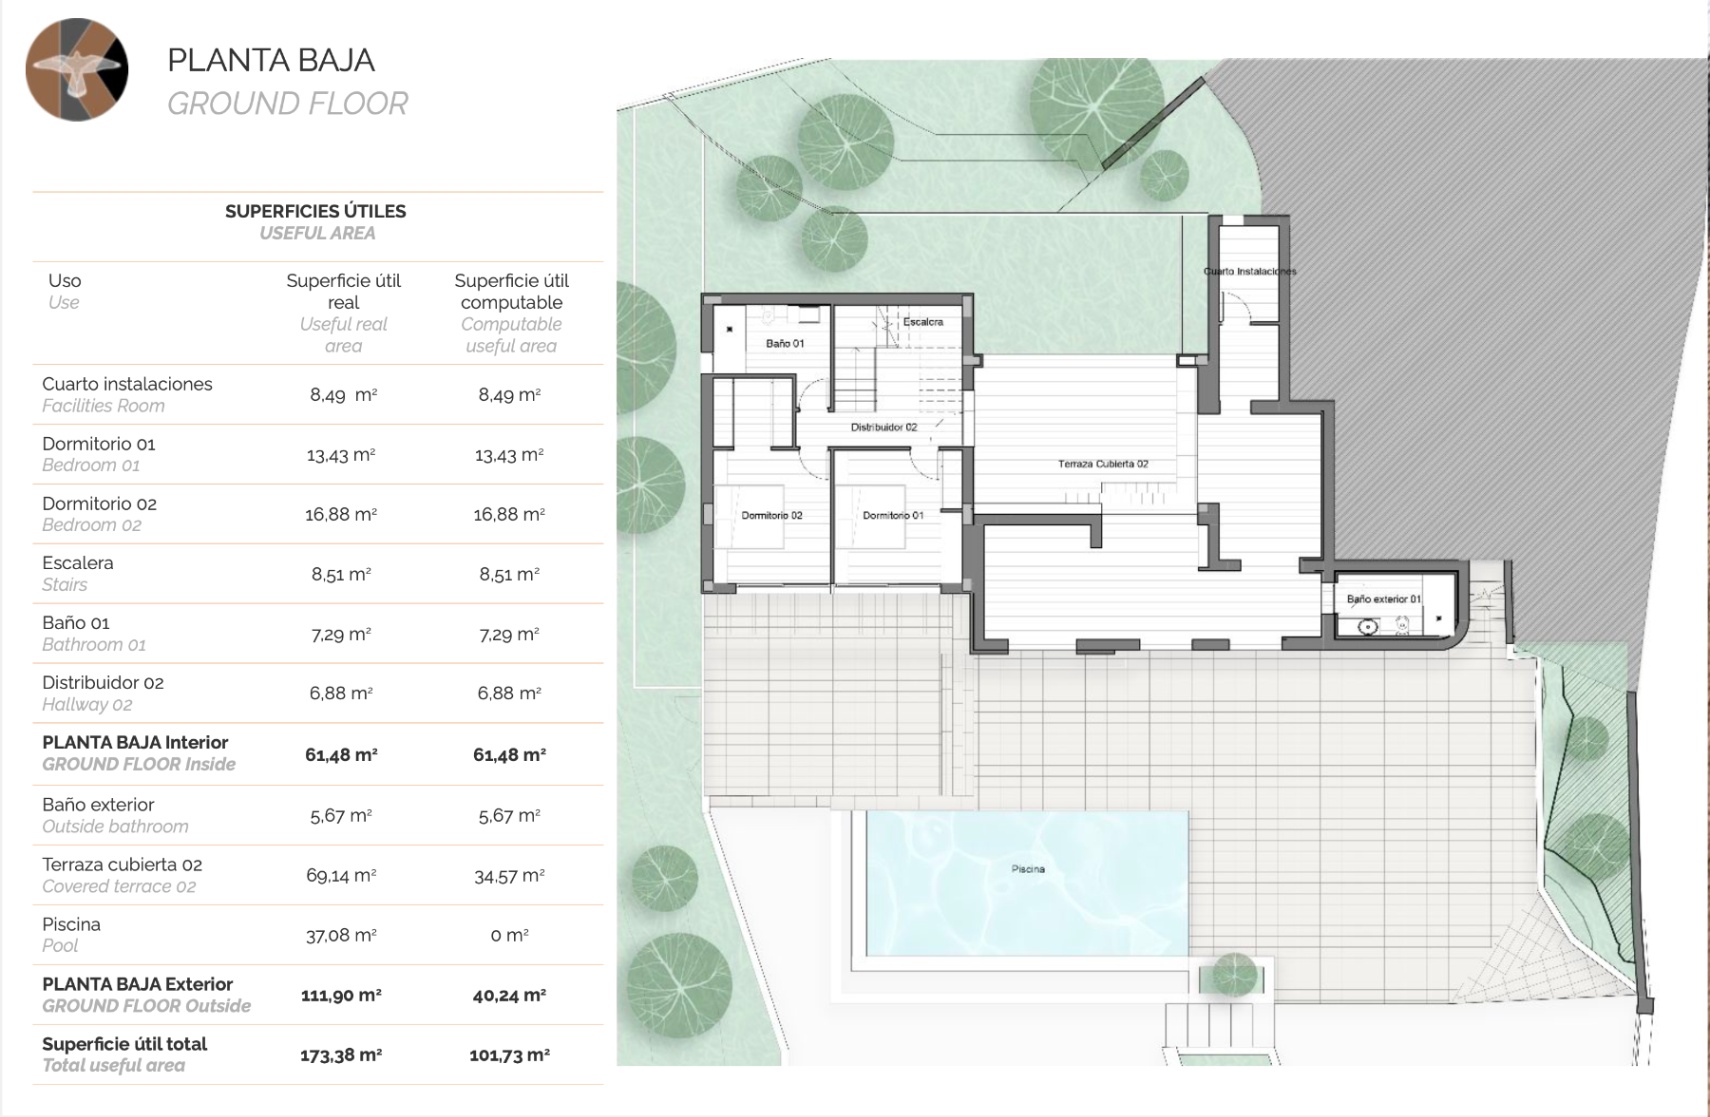 New build villa with sea views for sale in Altea, Costa Blanca